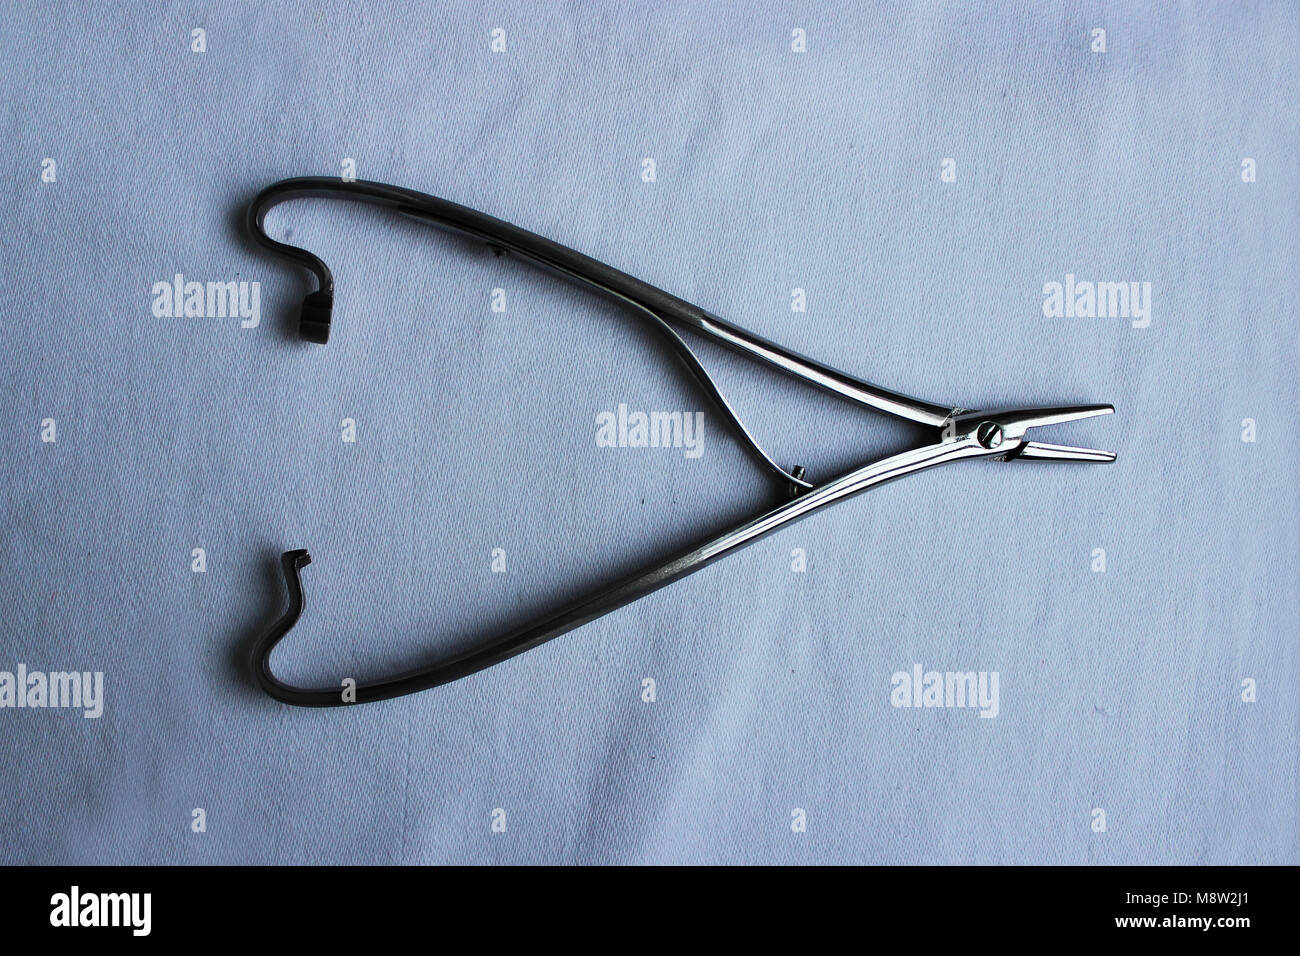 Medizinisches Instrument eine Nadel Halters liegt auf einem blauen Tuch Stockfoto